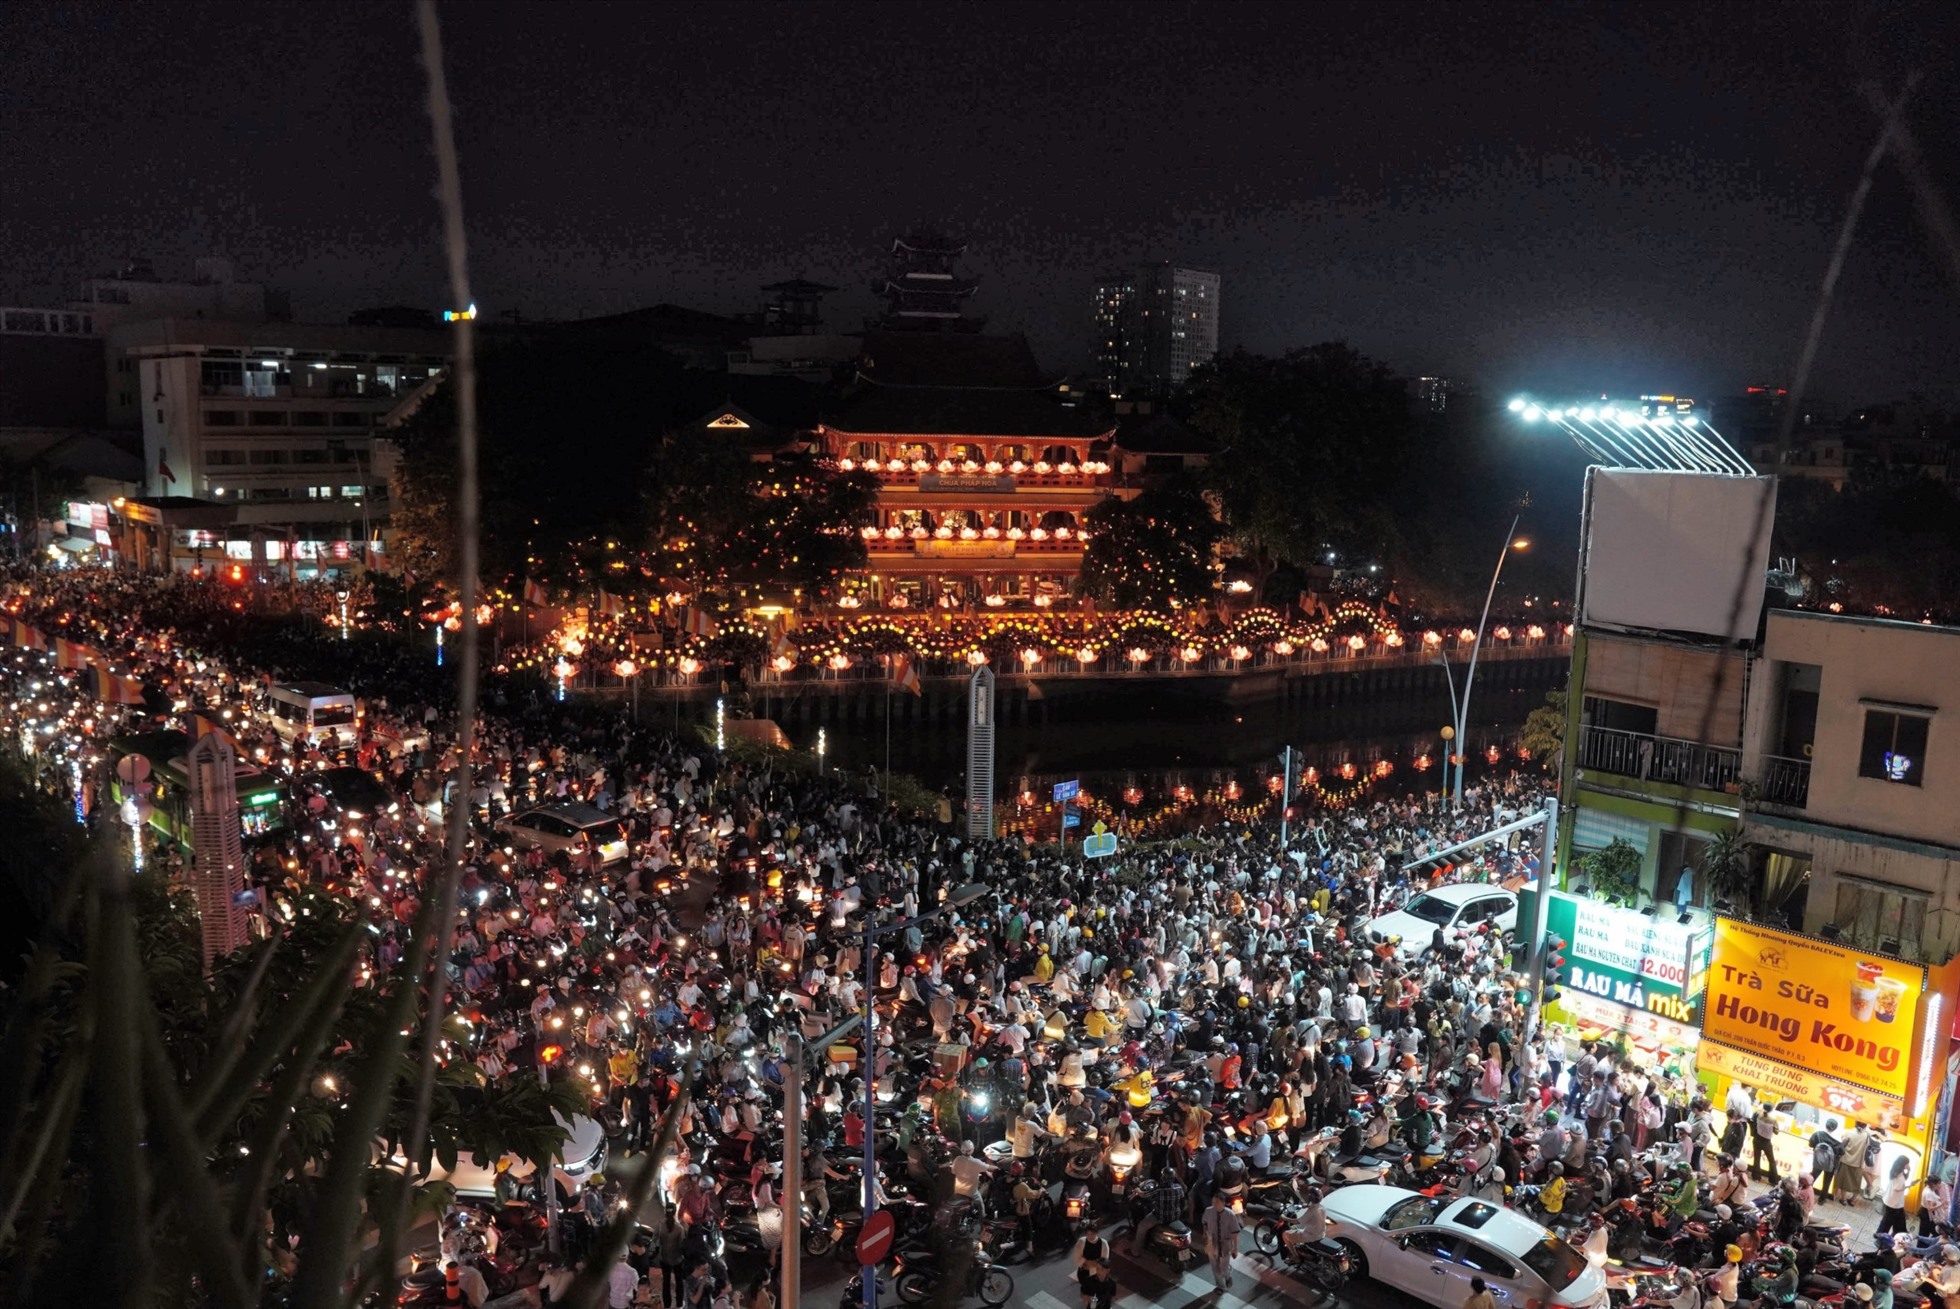 Tối 30.5, rất đông người dân đổ về chùa Pháp Hoa (Quận 3, TP Hồ Chí Minh) để tham gia nghi thức thả hoa đăng và cầu nguyện những điều tốt lành nhân dịp lễ Phật đản 2023. Lượng xe quá lớn khiến giao thông quanh khu vực “tê liệt” trong nhiều giờ.